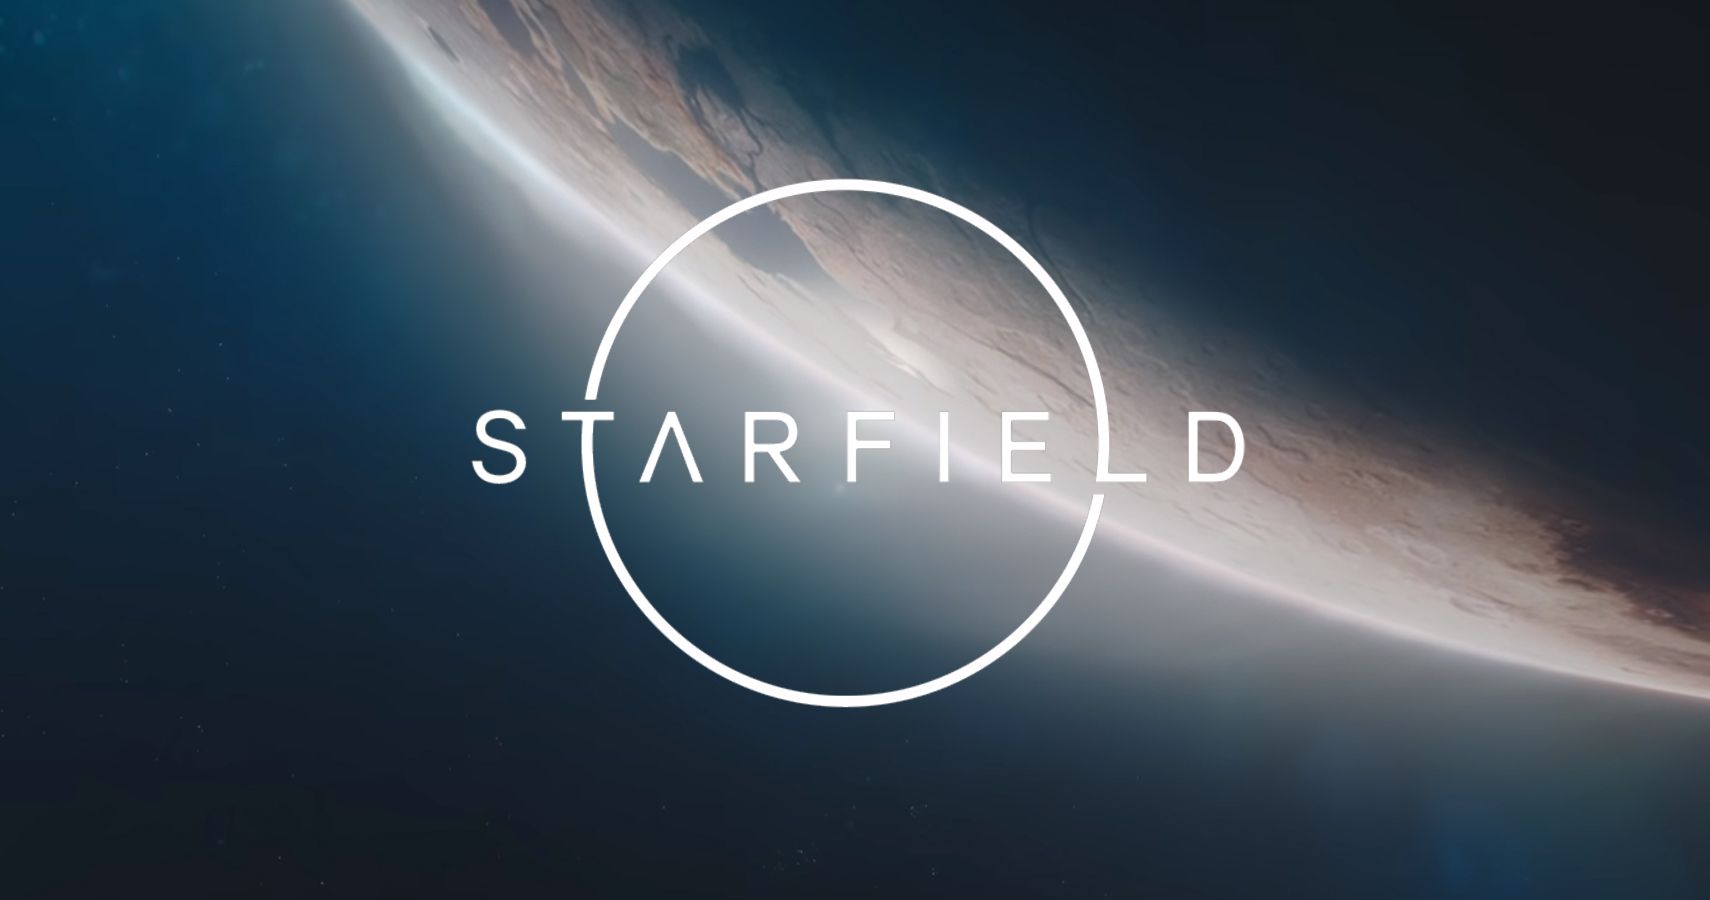 download starfield e3